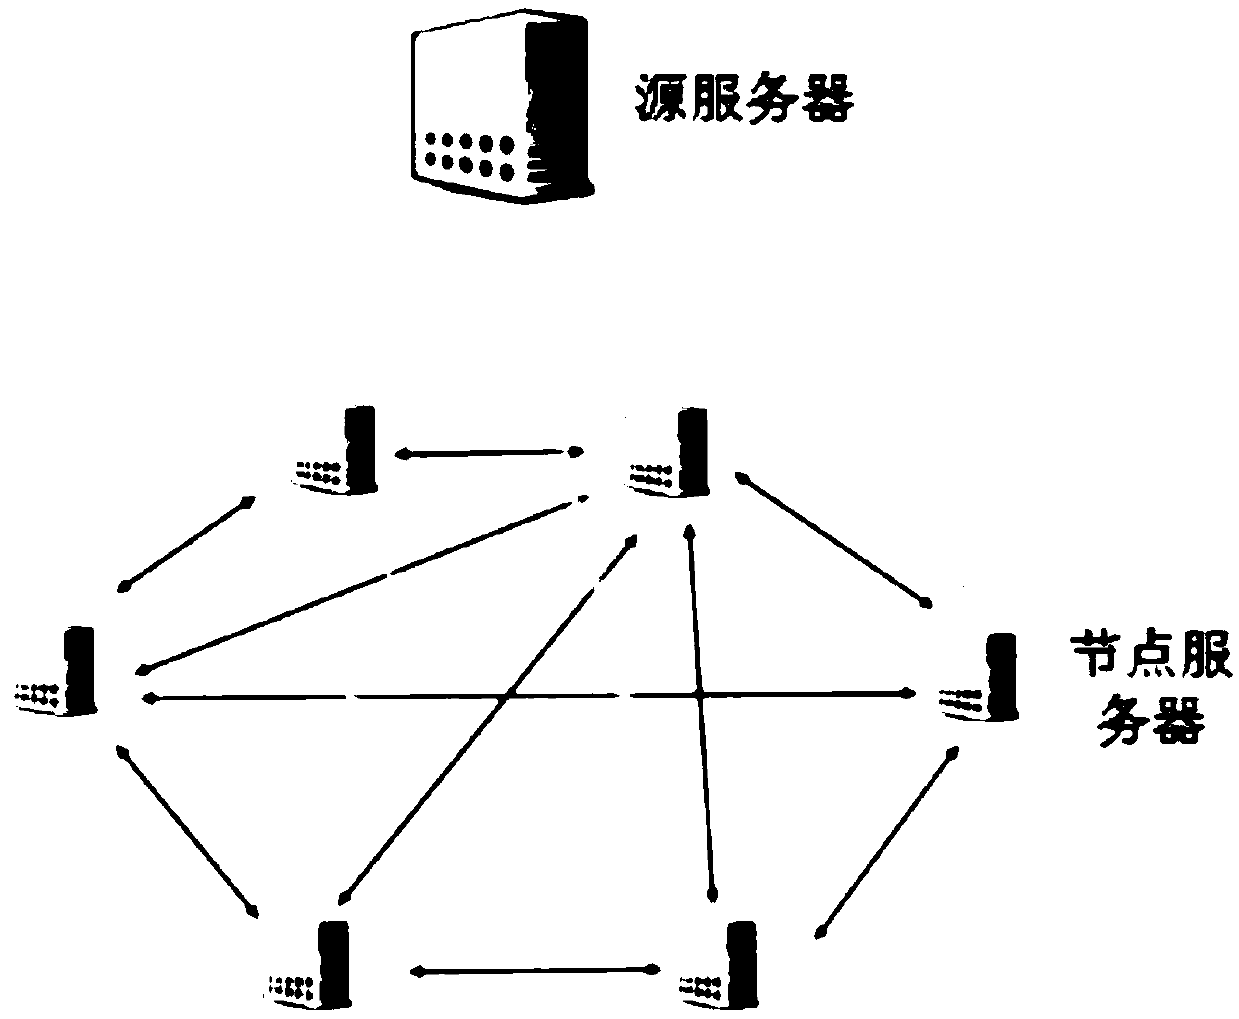 File distribution method, source server, node server and file distribution system